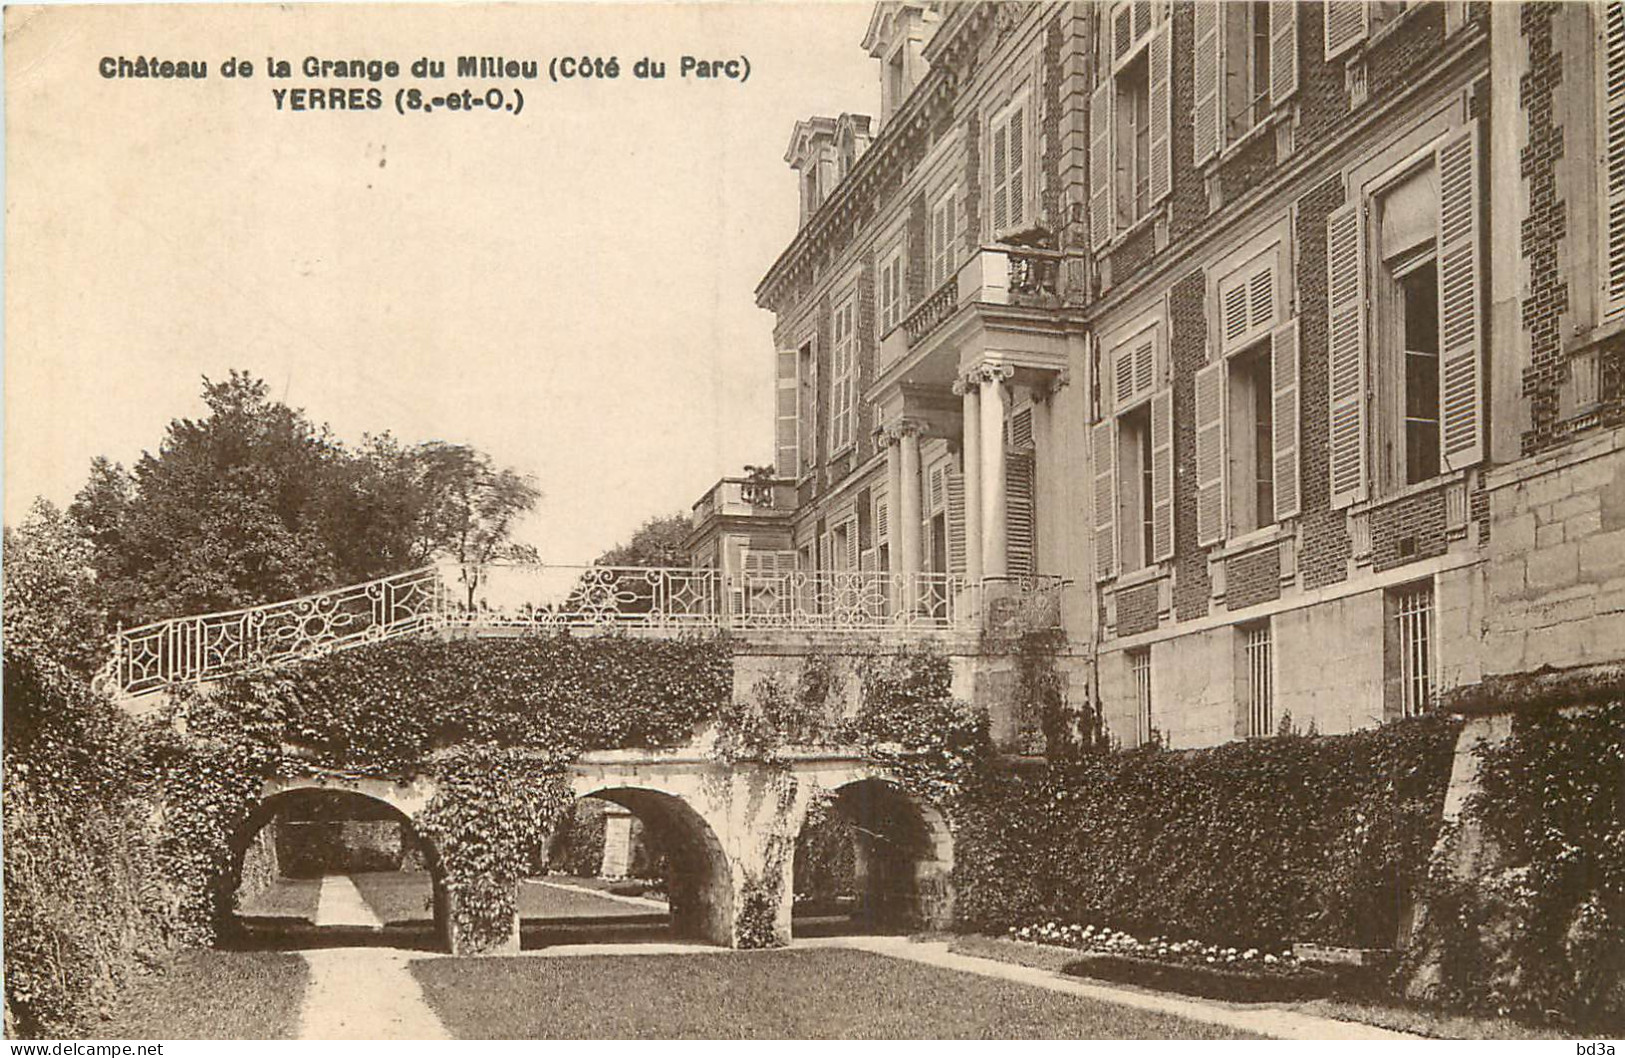  91  YERRES  Château De La Grange Du Milieu - Yerres